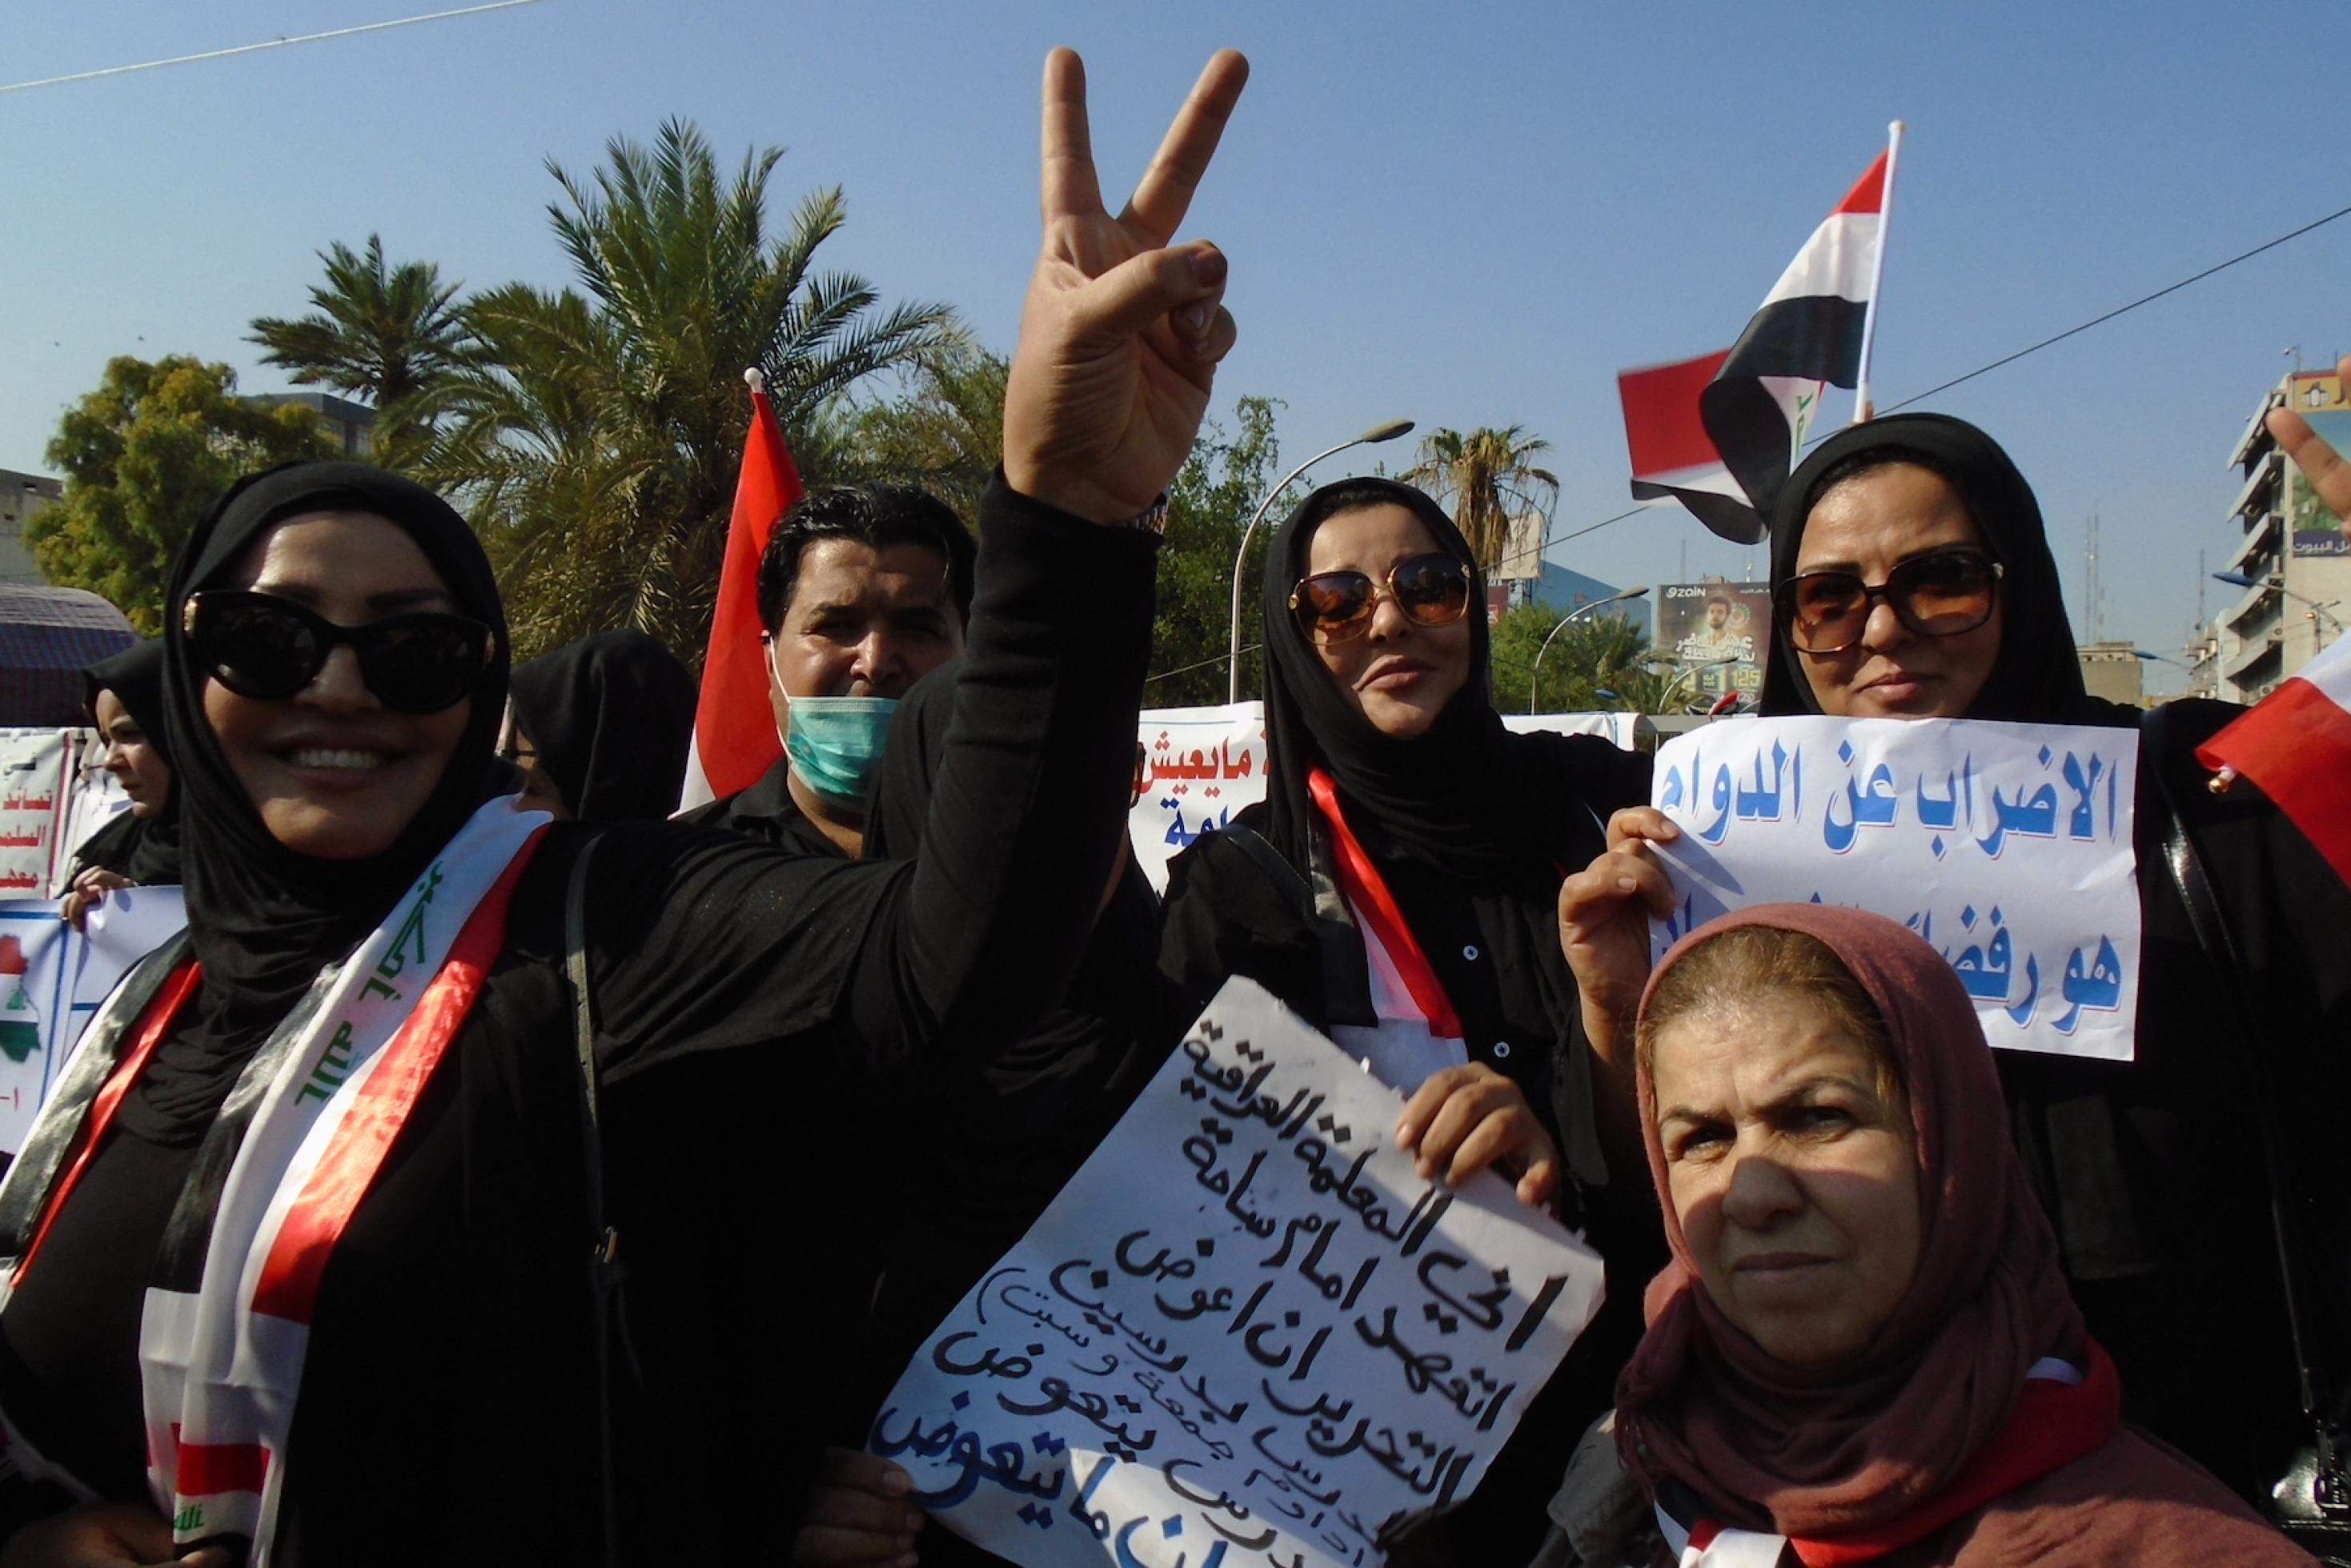 In der Mitte des Bildes ist eine hochgereckte Hand mit dem Siegeszeichen zu sehen, rechts davon die irakische Flagge, die offenbar ebenfalls eine Demonstrantin mitgebracht hat. Zwei von ihnen halten Demoschilder mit Parolen in arabischer Sprache in die Höhe.